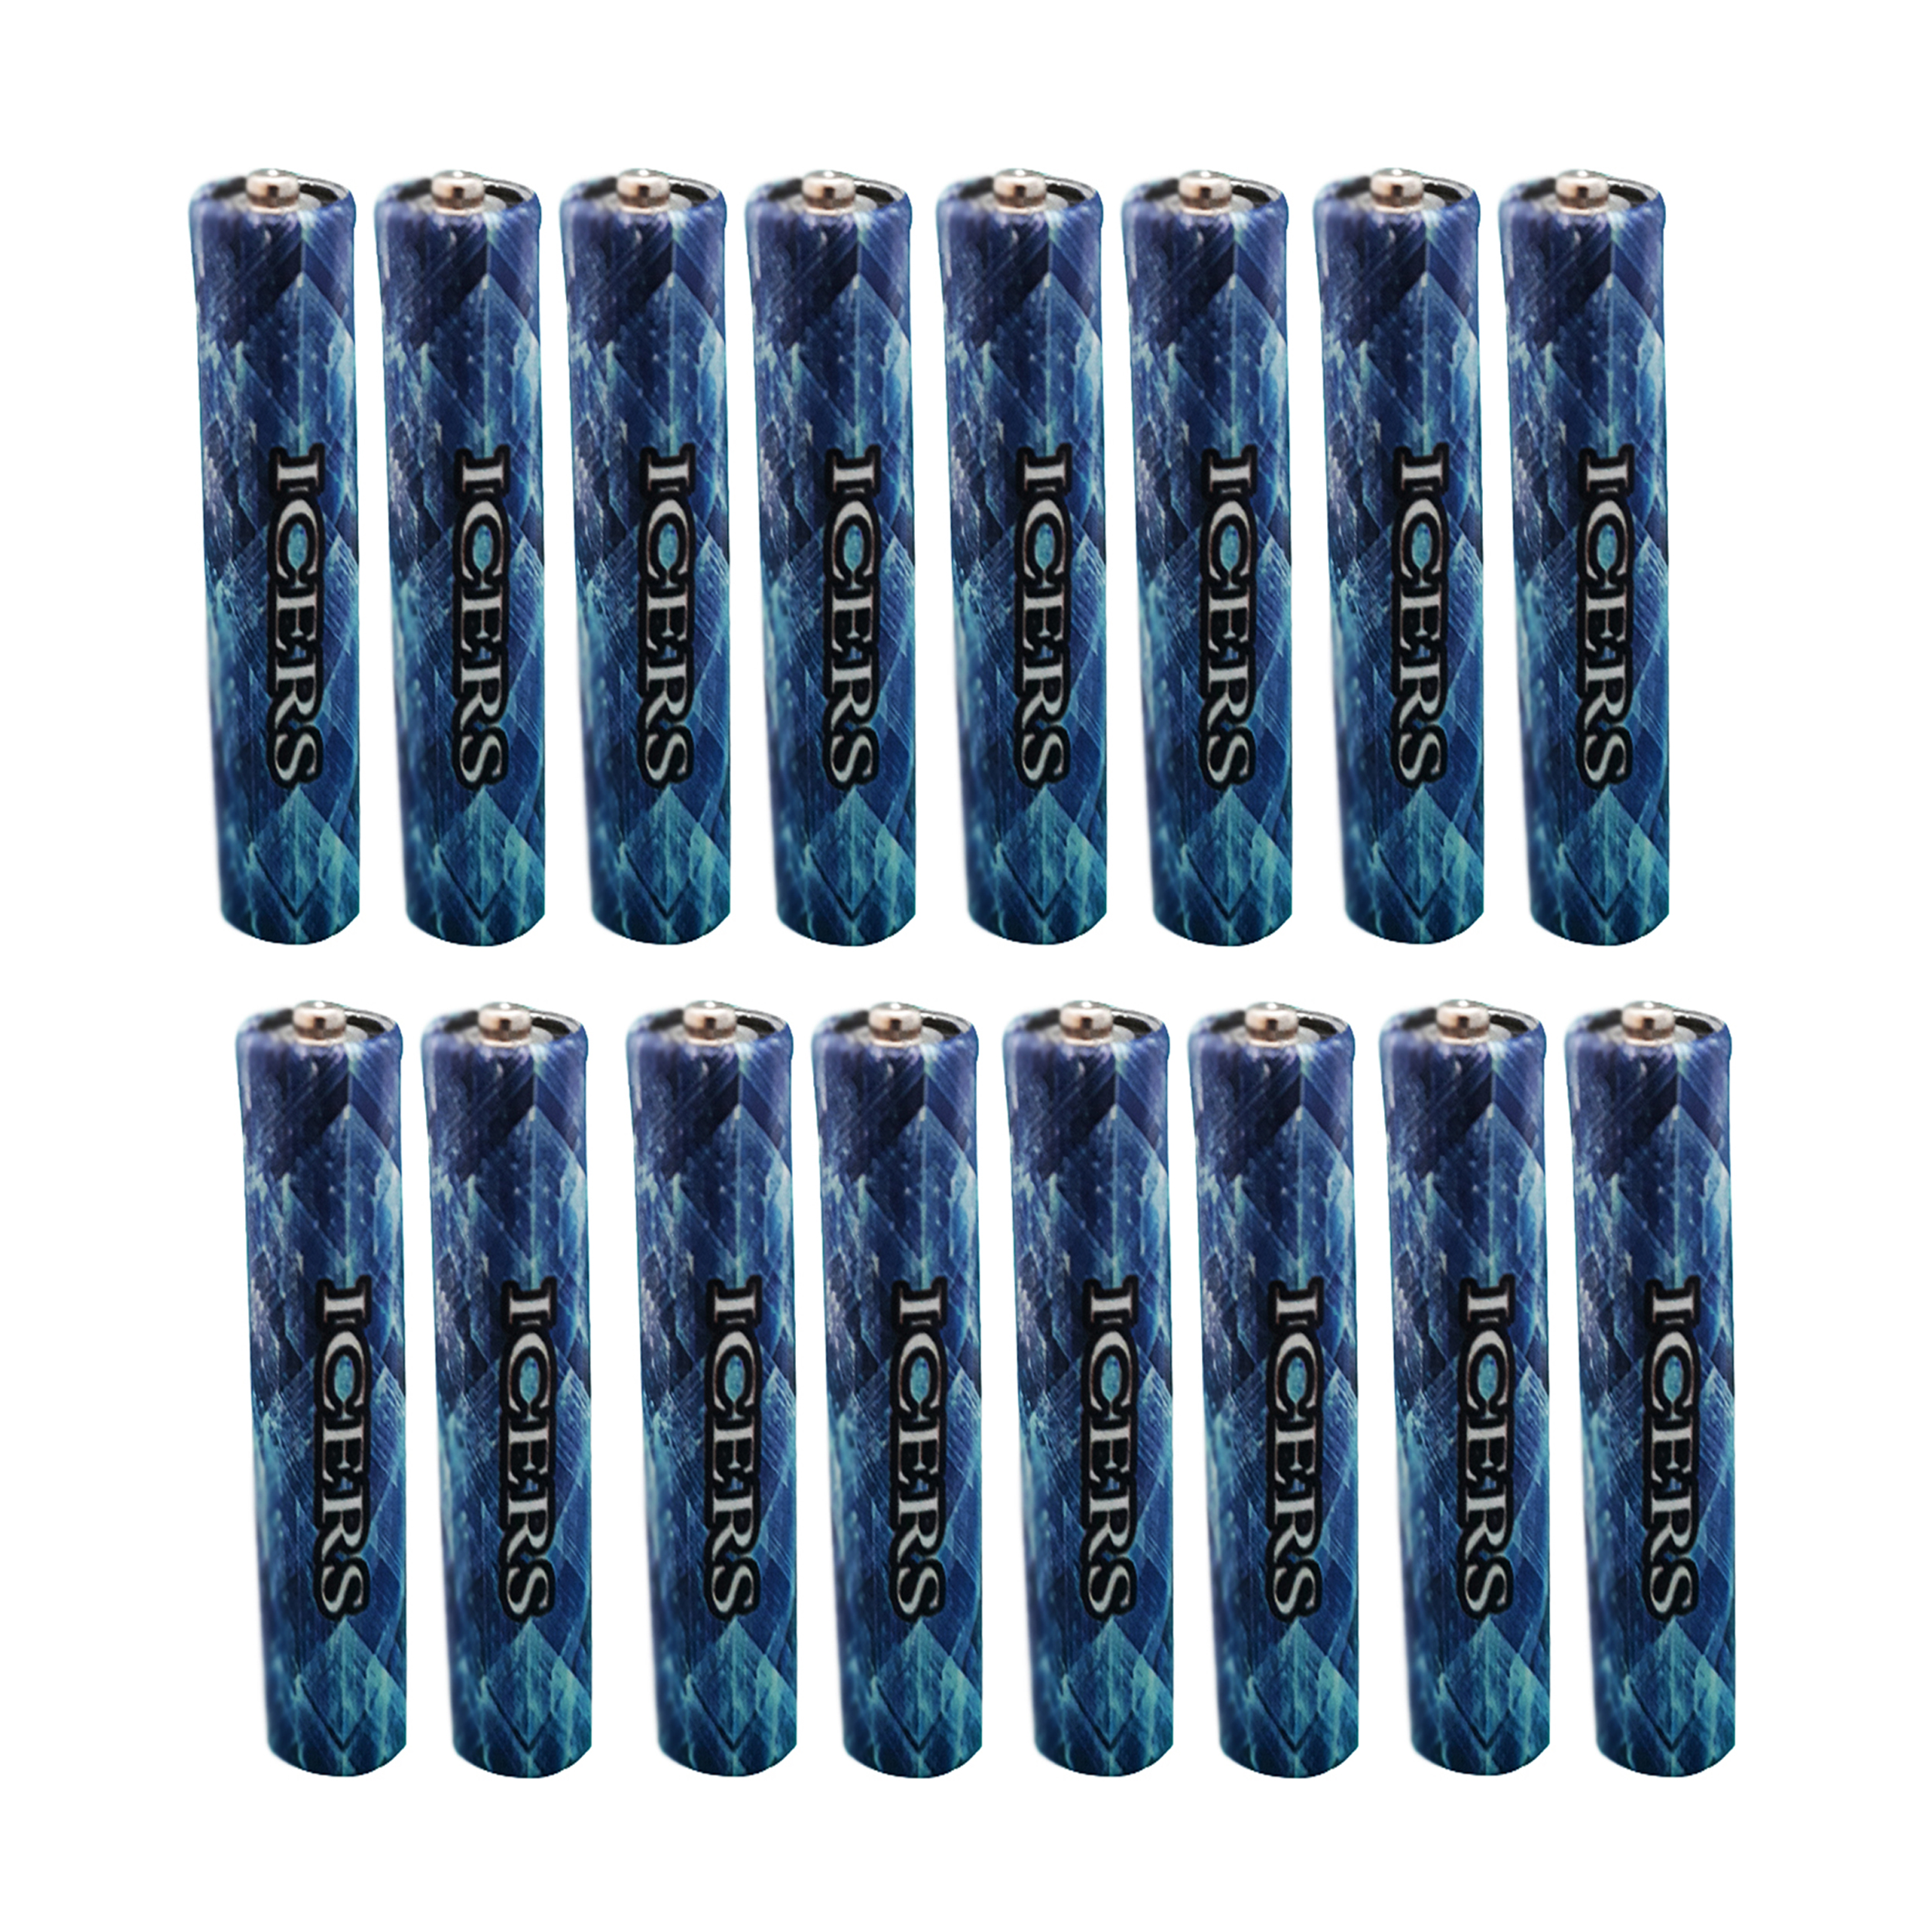 باتری نیم قلمی آیسر مدل EX بسته 16 عددی